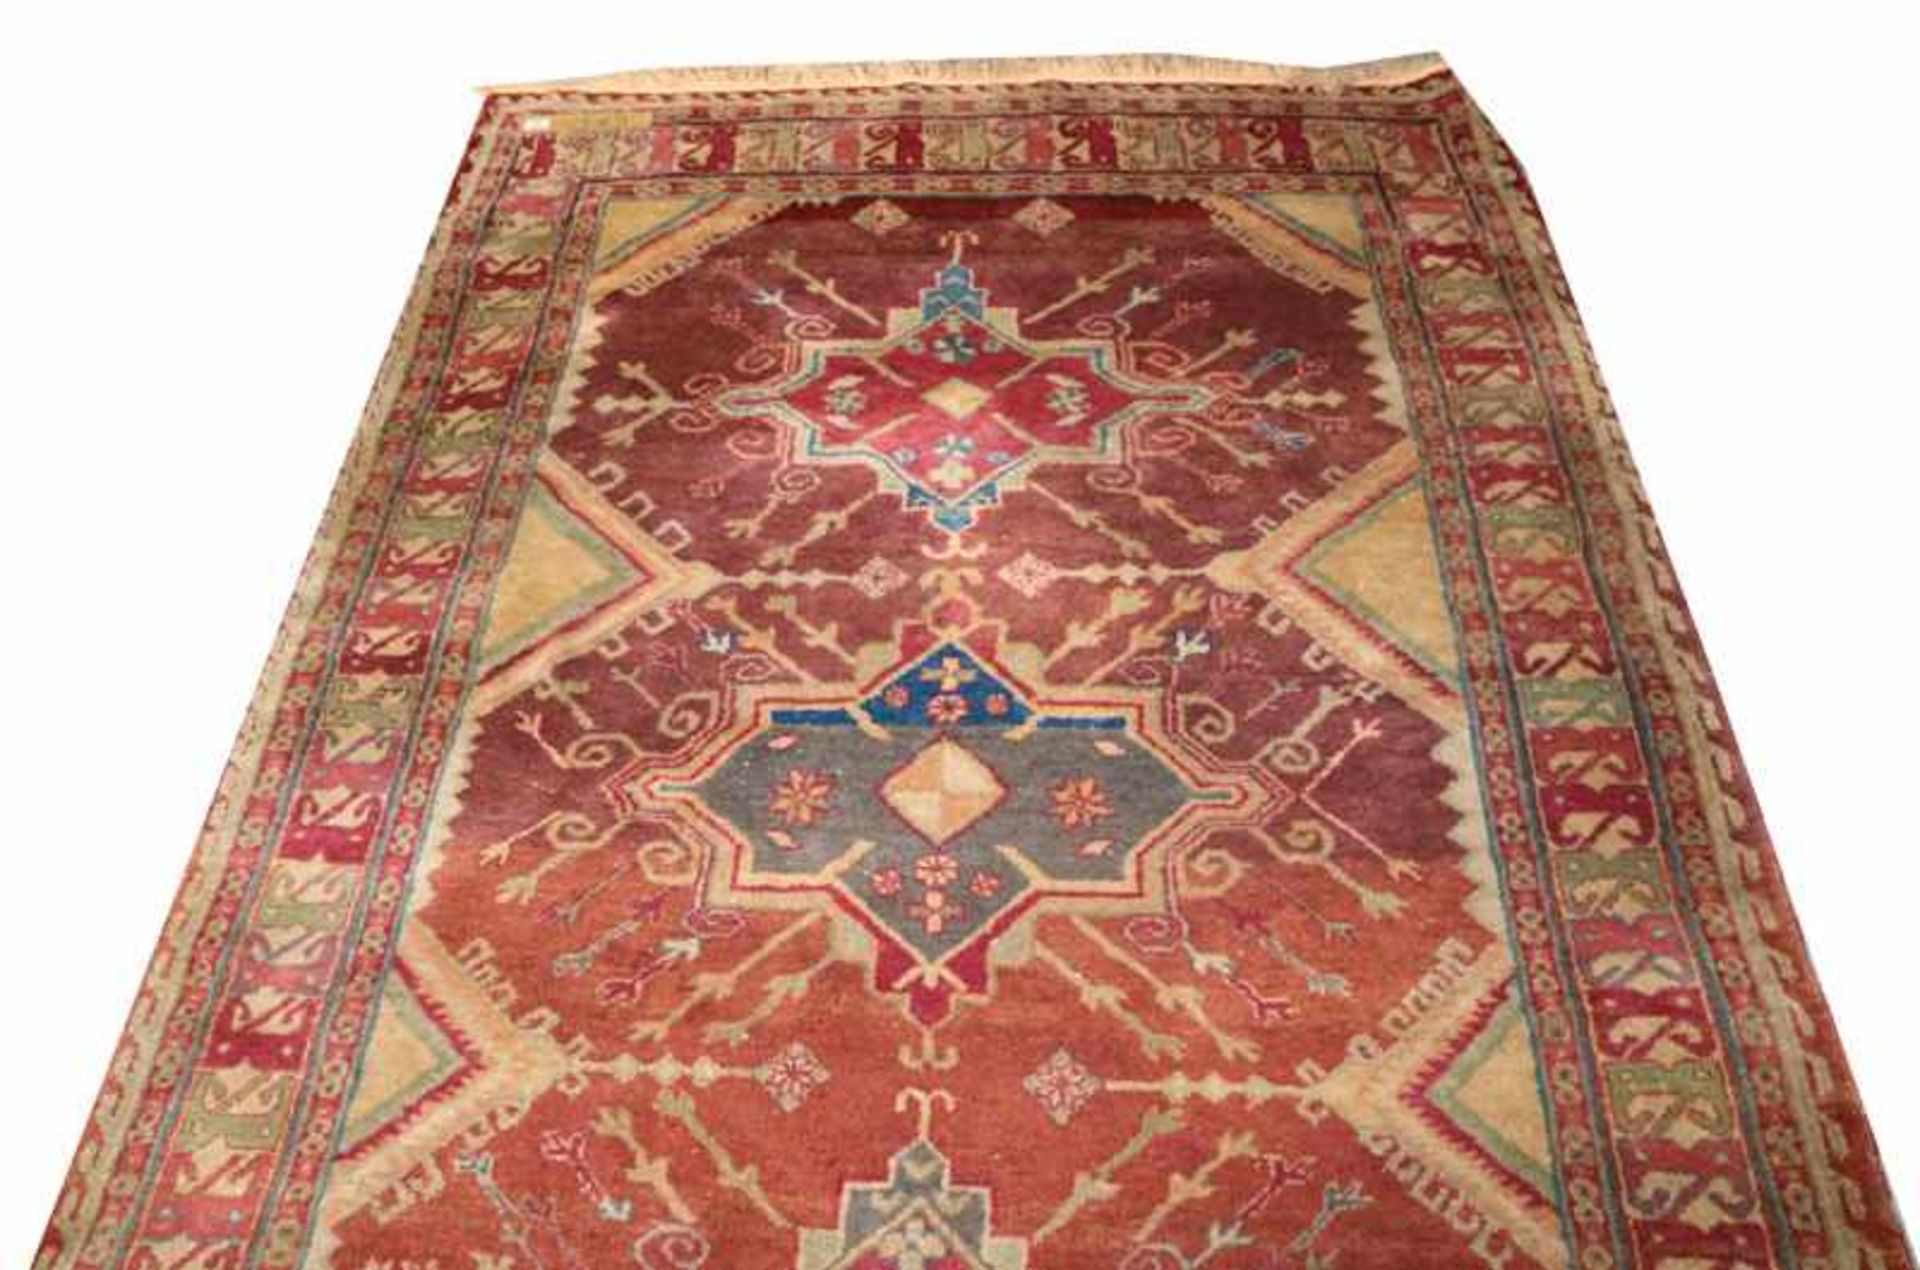 Teppich, Kars, braun/rot/blau, Gebrauchsspuren und Farbveränderungen, 245 cm x 160 cm